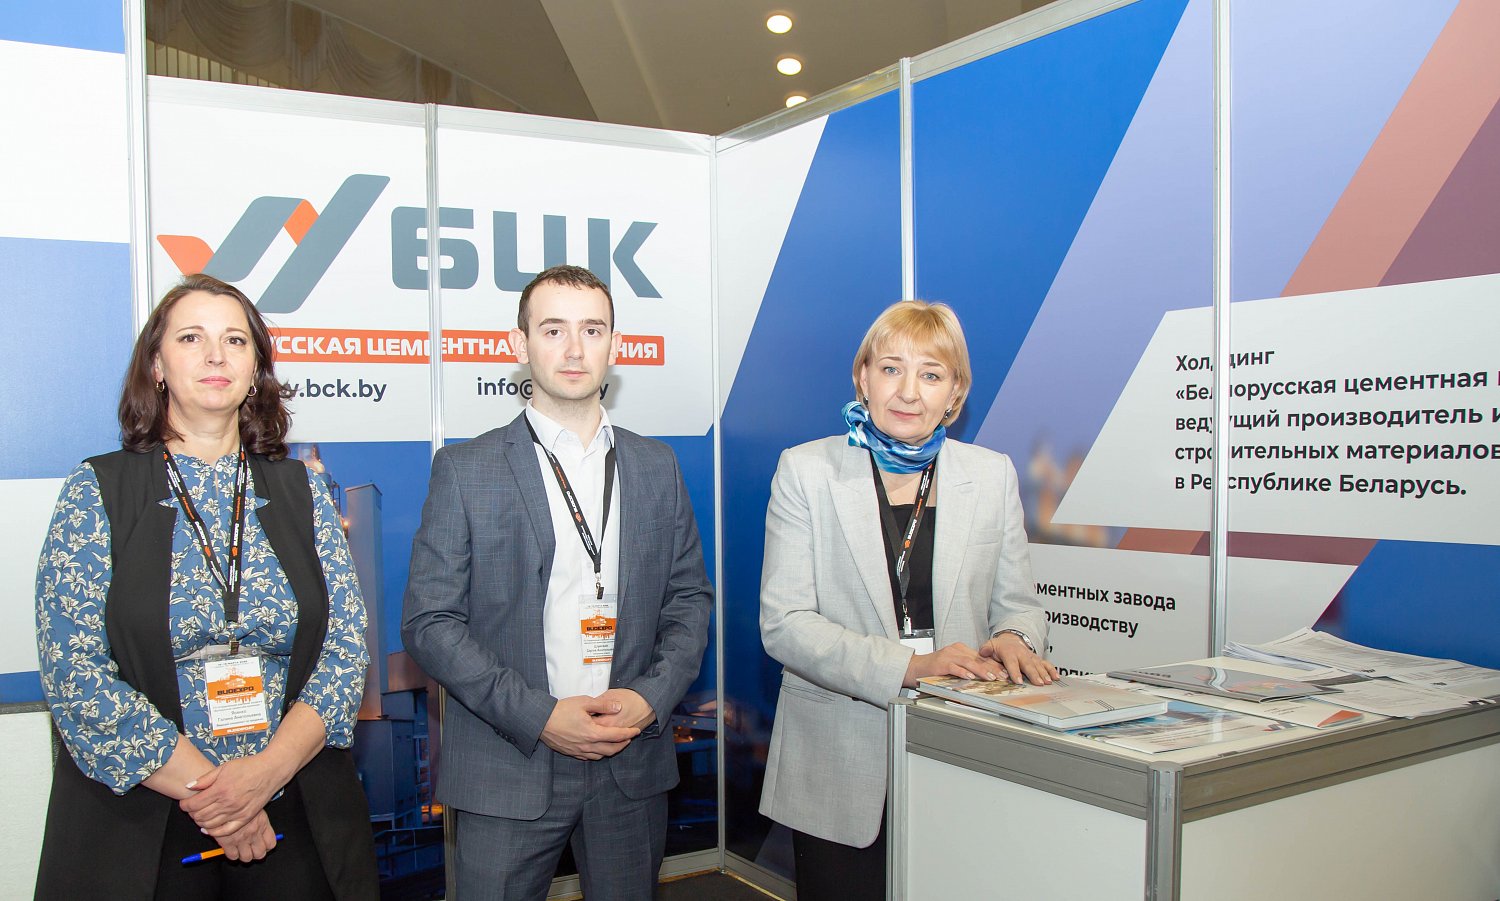 Белорусская цементная компания представила свою продукцию на выставке BUDEXPO – 2022